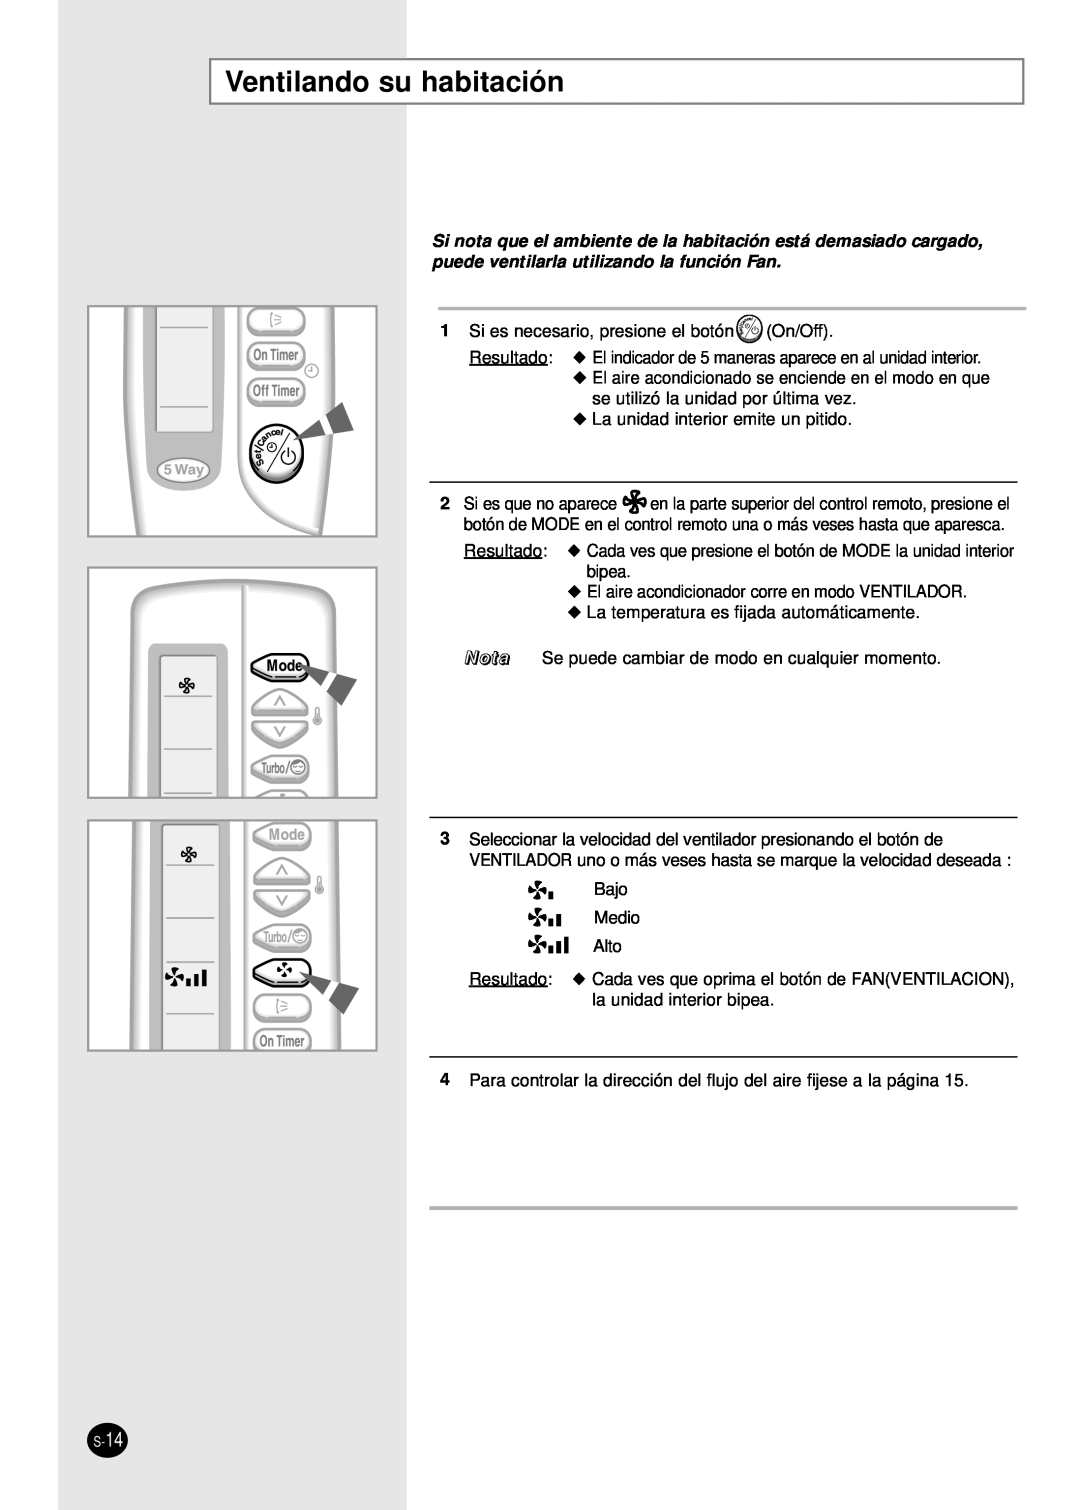 Samsung AM14B1(B2)E07 manuel dutilisation Ventilando su habitación 